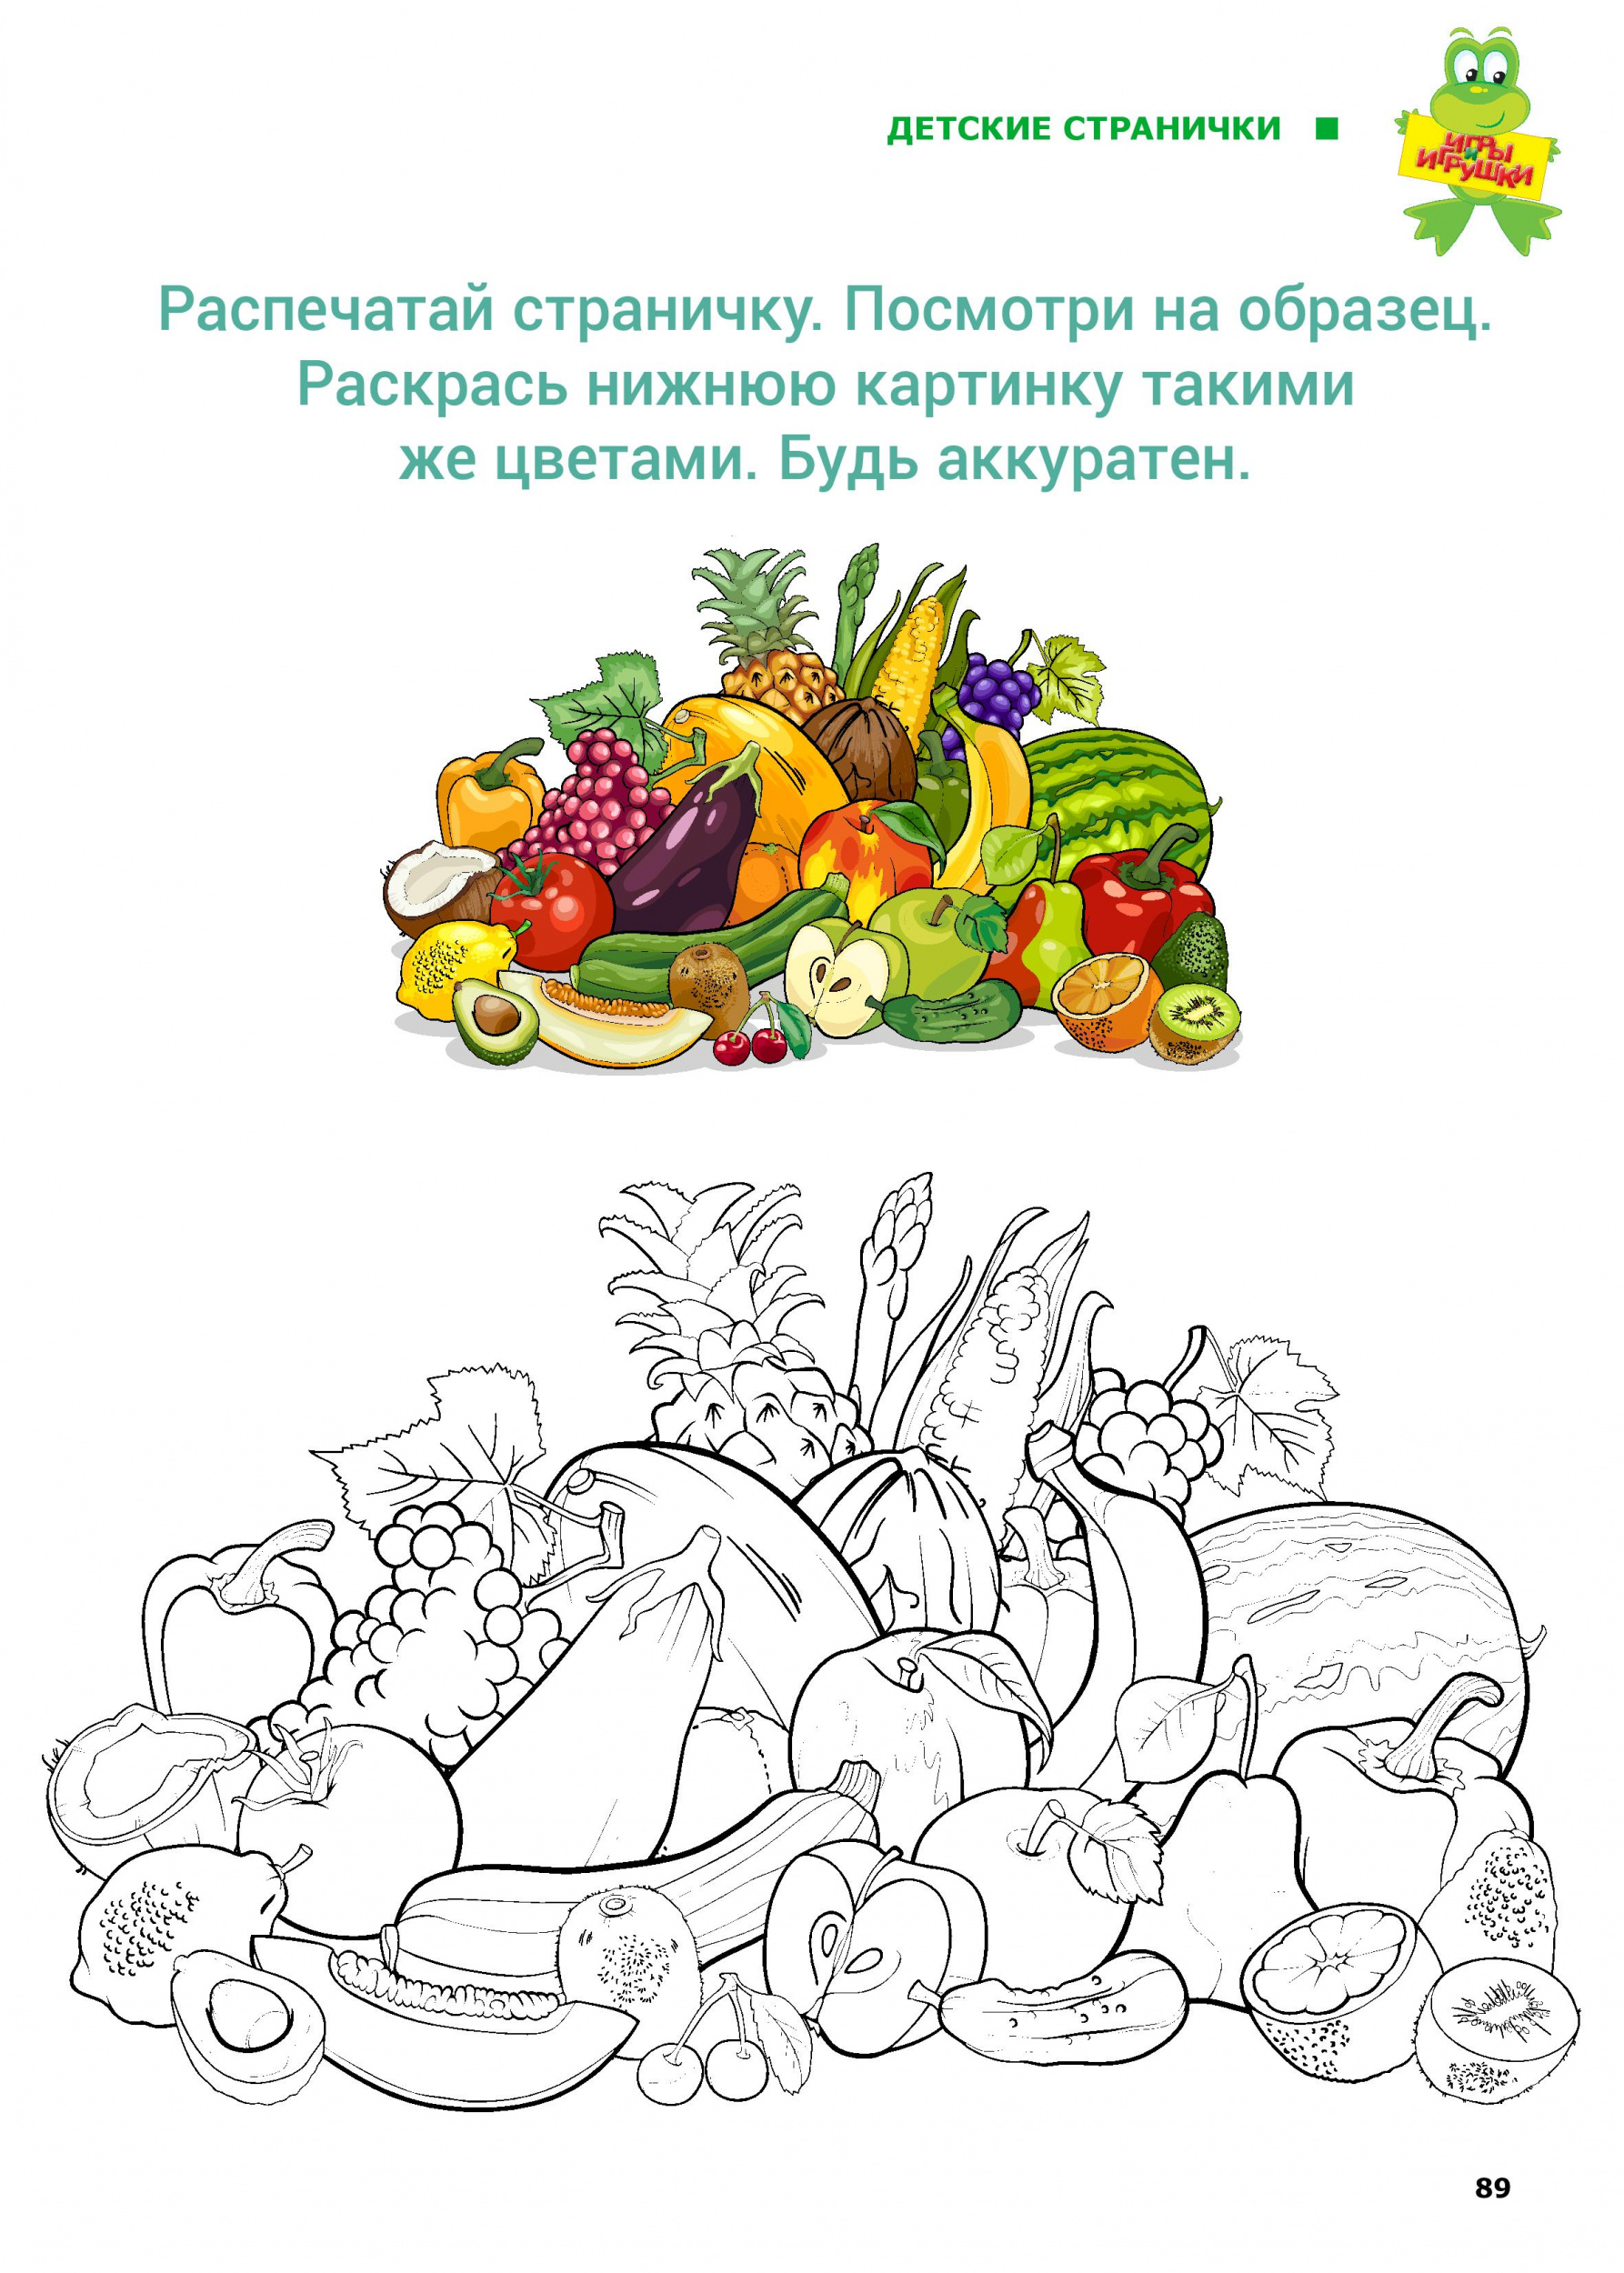 Раскрась фрукты и овощи по образцу